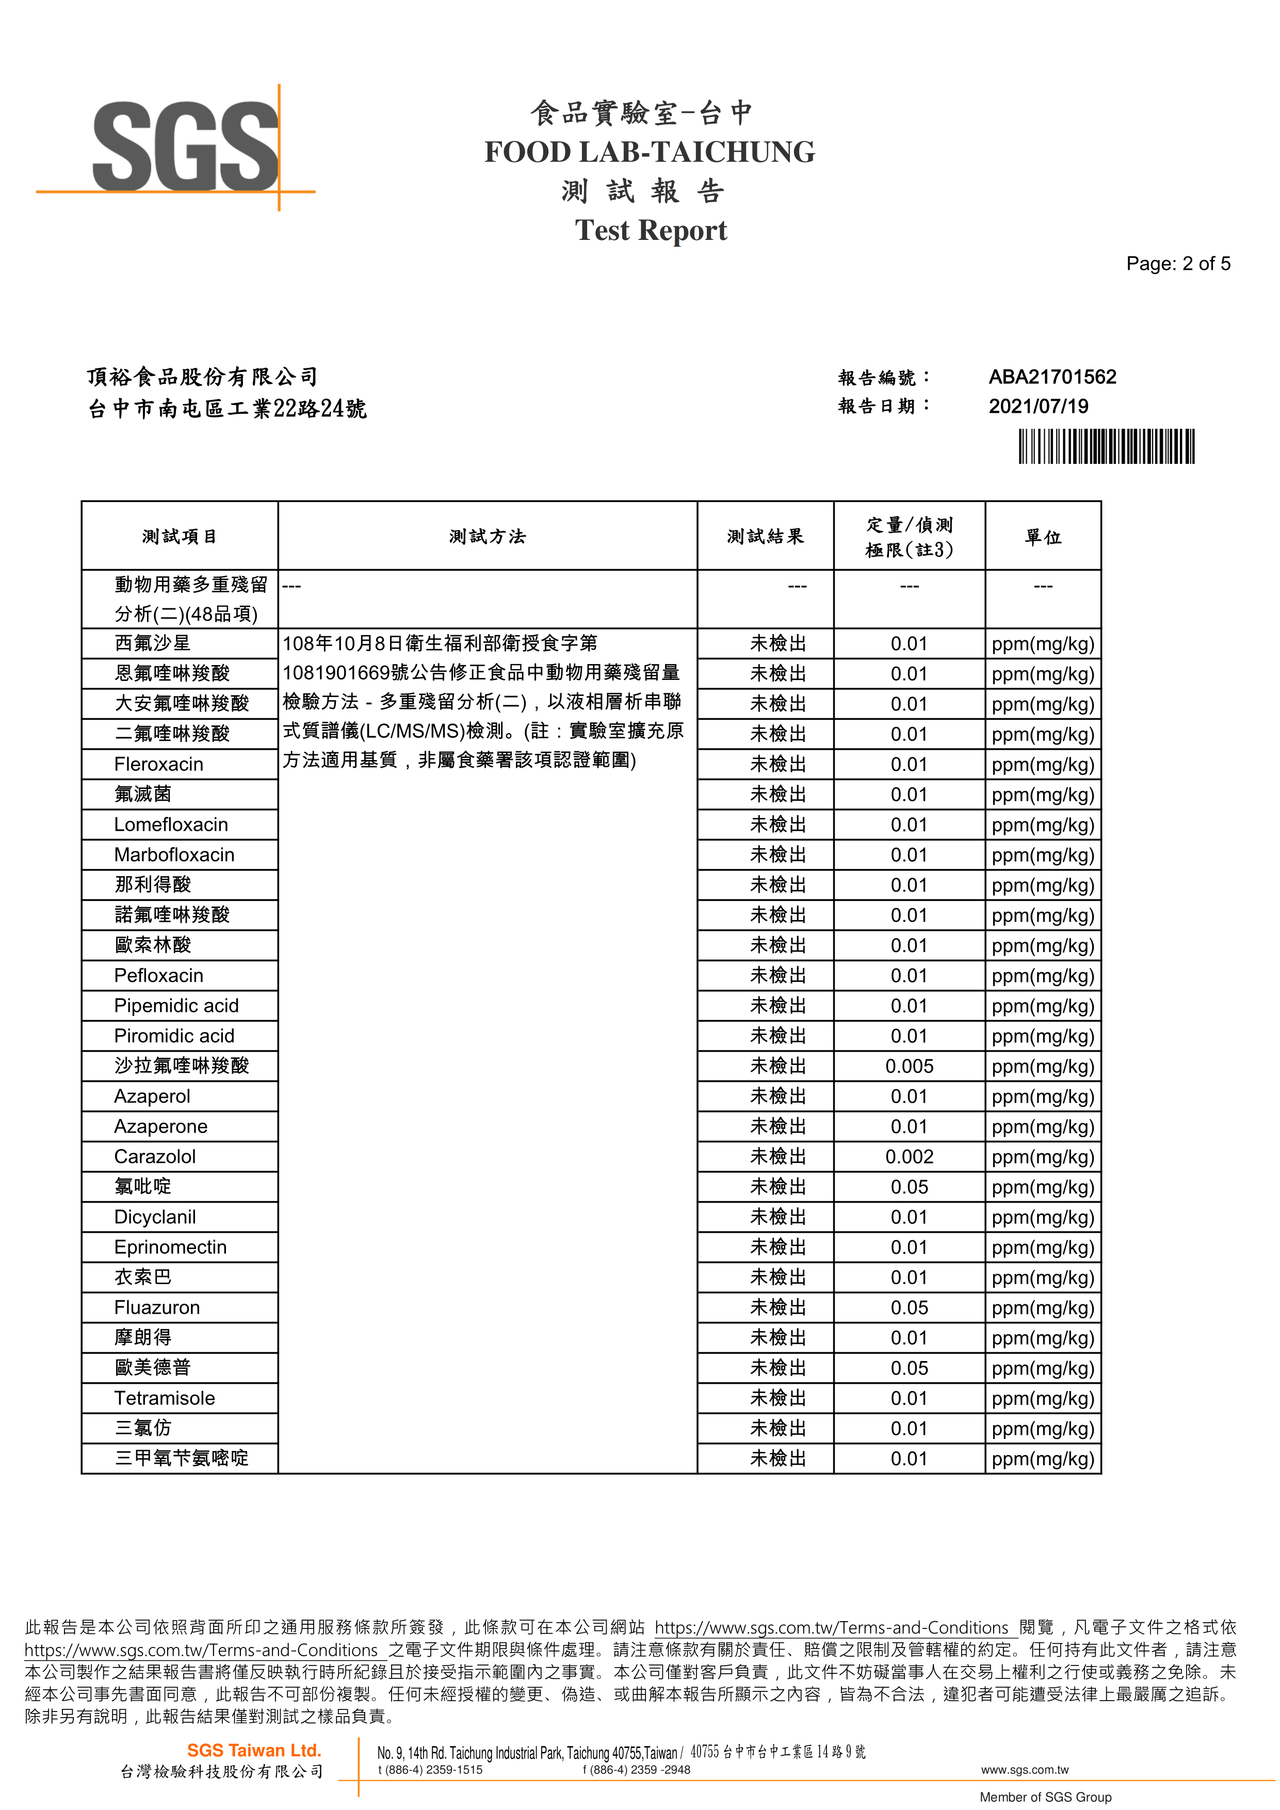 麻辣牛肉麵-動物用藥48項檢驗報告2021.07.19